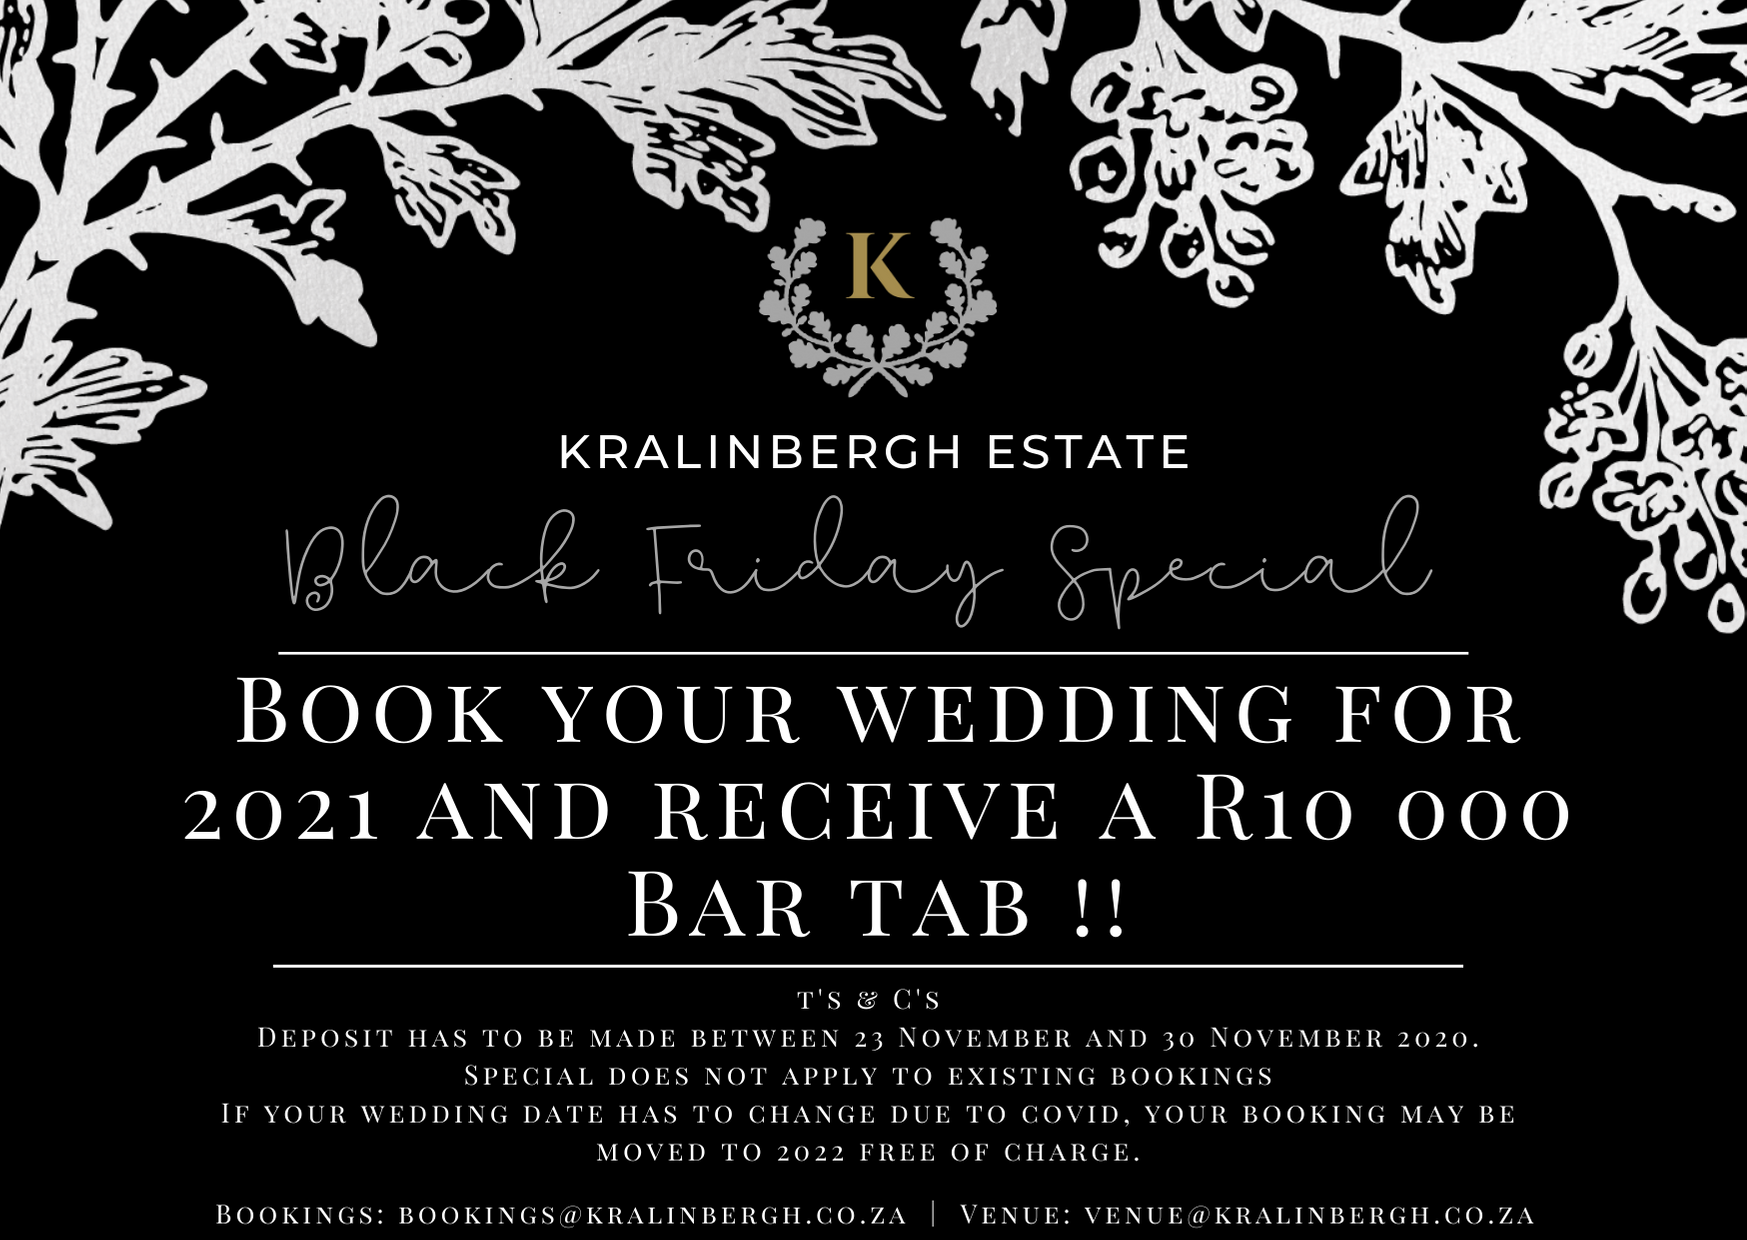 Romantic & Rustic Wedding Venues in Mpumalanga – Kralinbergh Estate